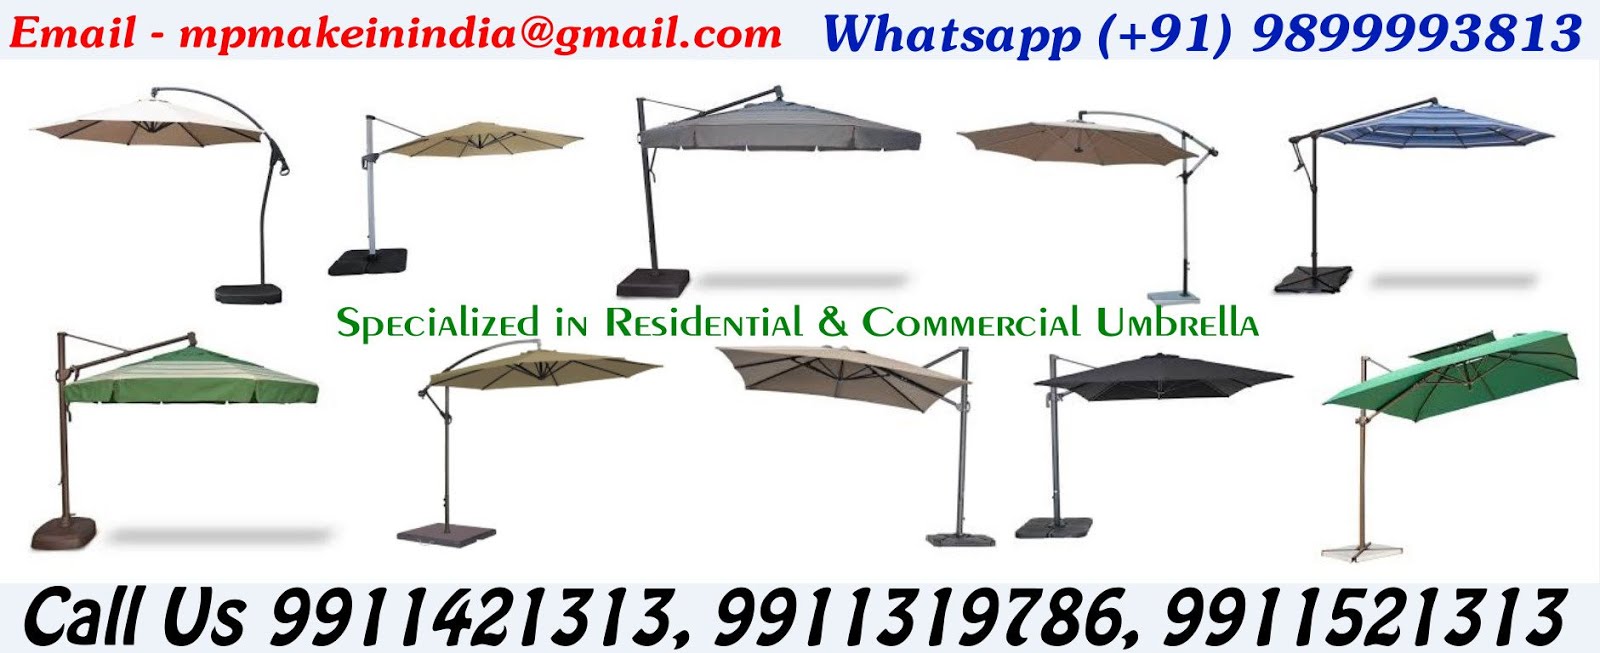 Side Pole Umbrellas Manufacturers, Contractors, Service Providers, Suppliers in Delhi, India